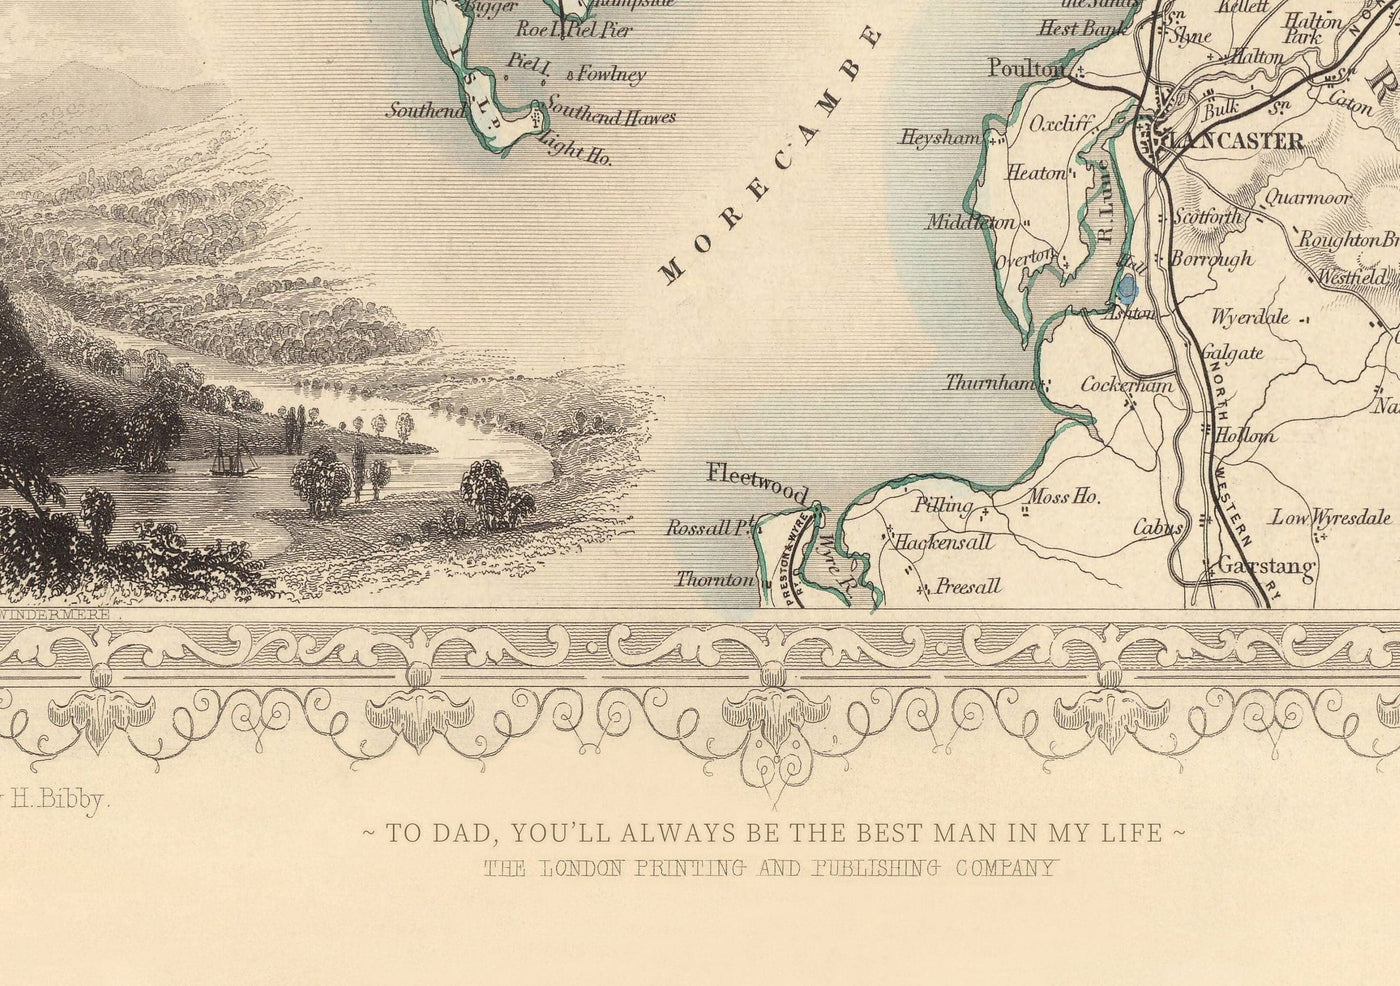 Alte handgefärterte Karte von Plymouth 1851 von Tallis, Rapkin - Stonehouse, Devonport